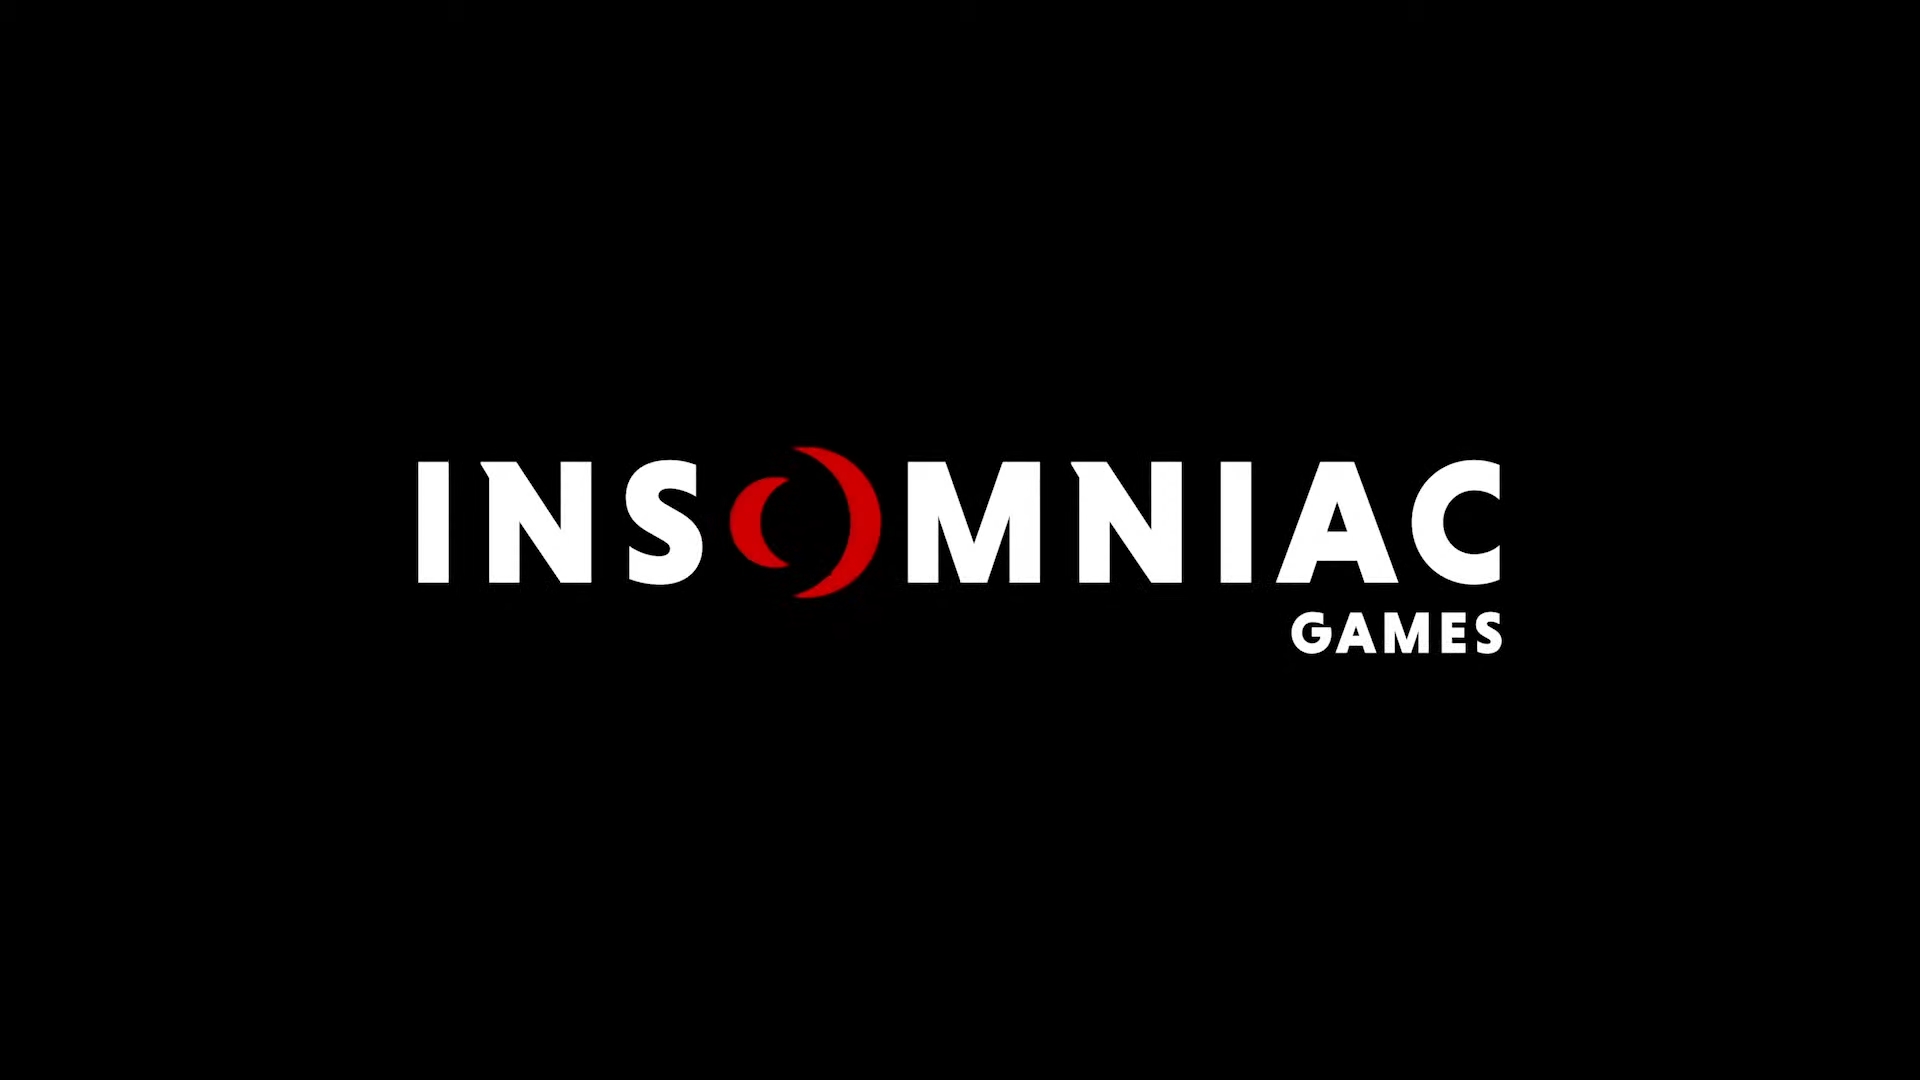 The Insomniac Games logo